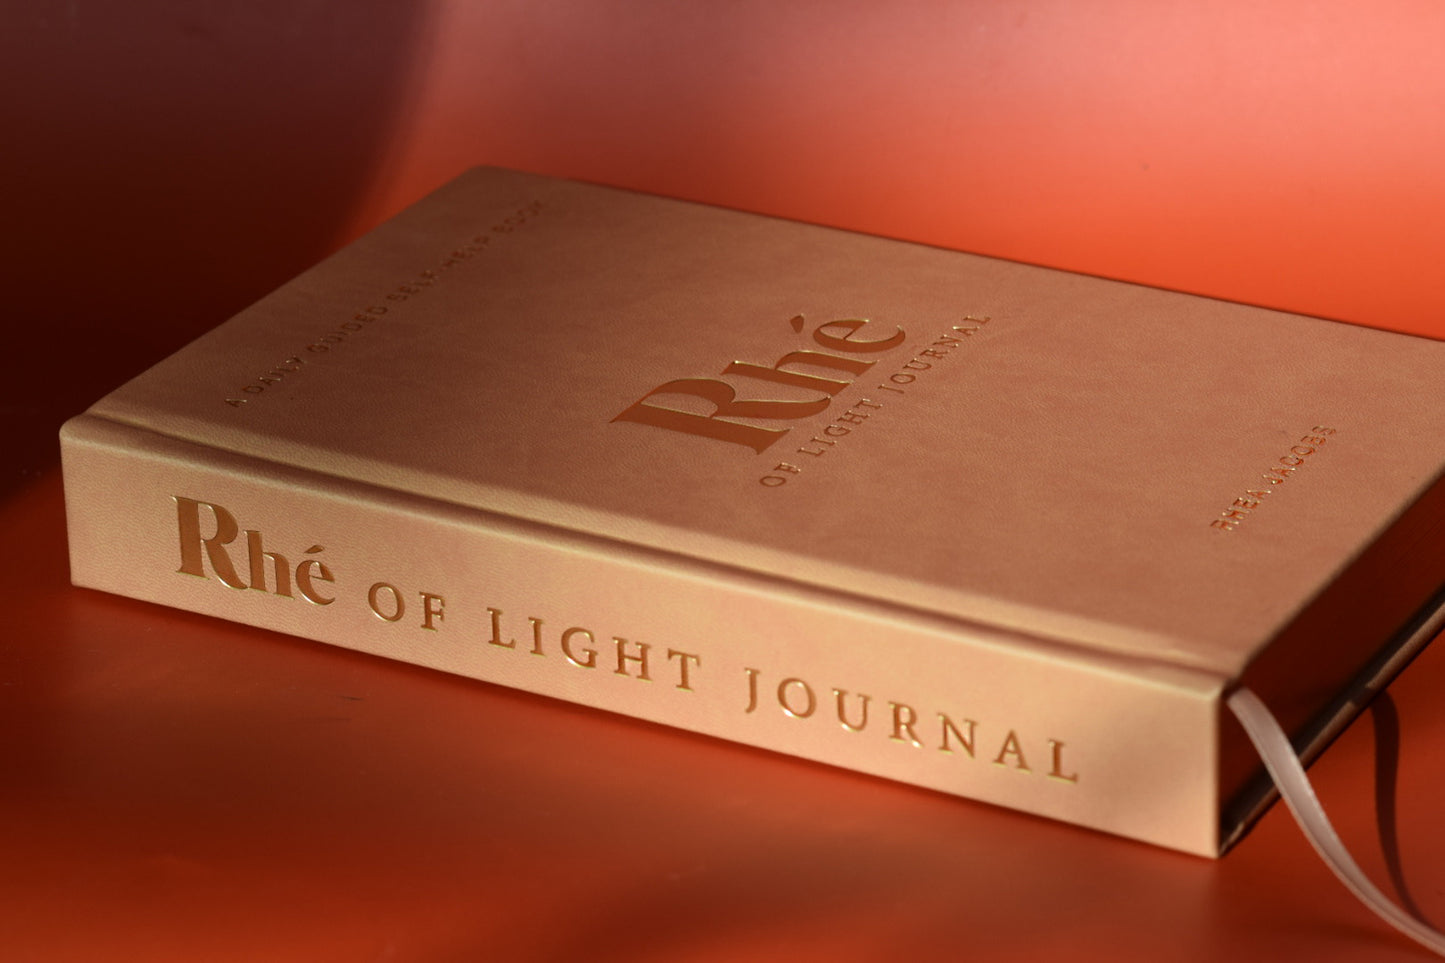 Rhé of light journal